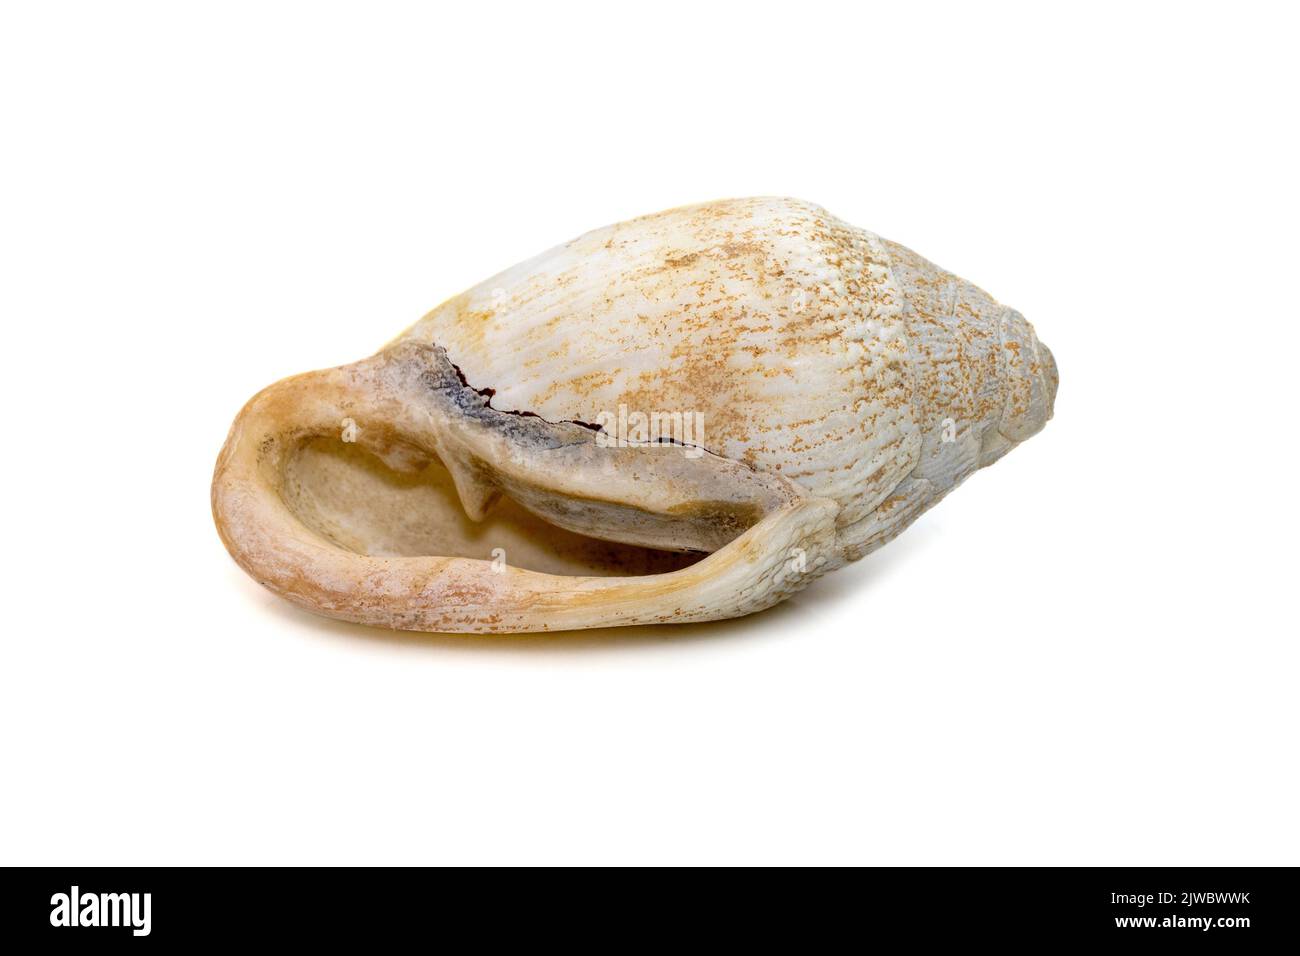 Image de la très vieille coquille de mer blanche de phalium granulatum isolée sur fond blanc. Animaux sous-marins. Coquillages. Banque D'Images